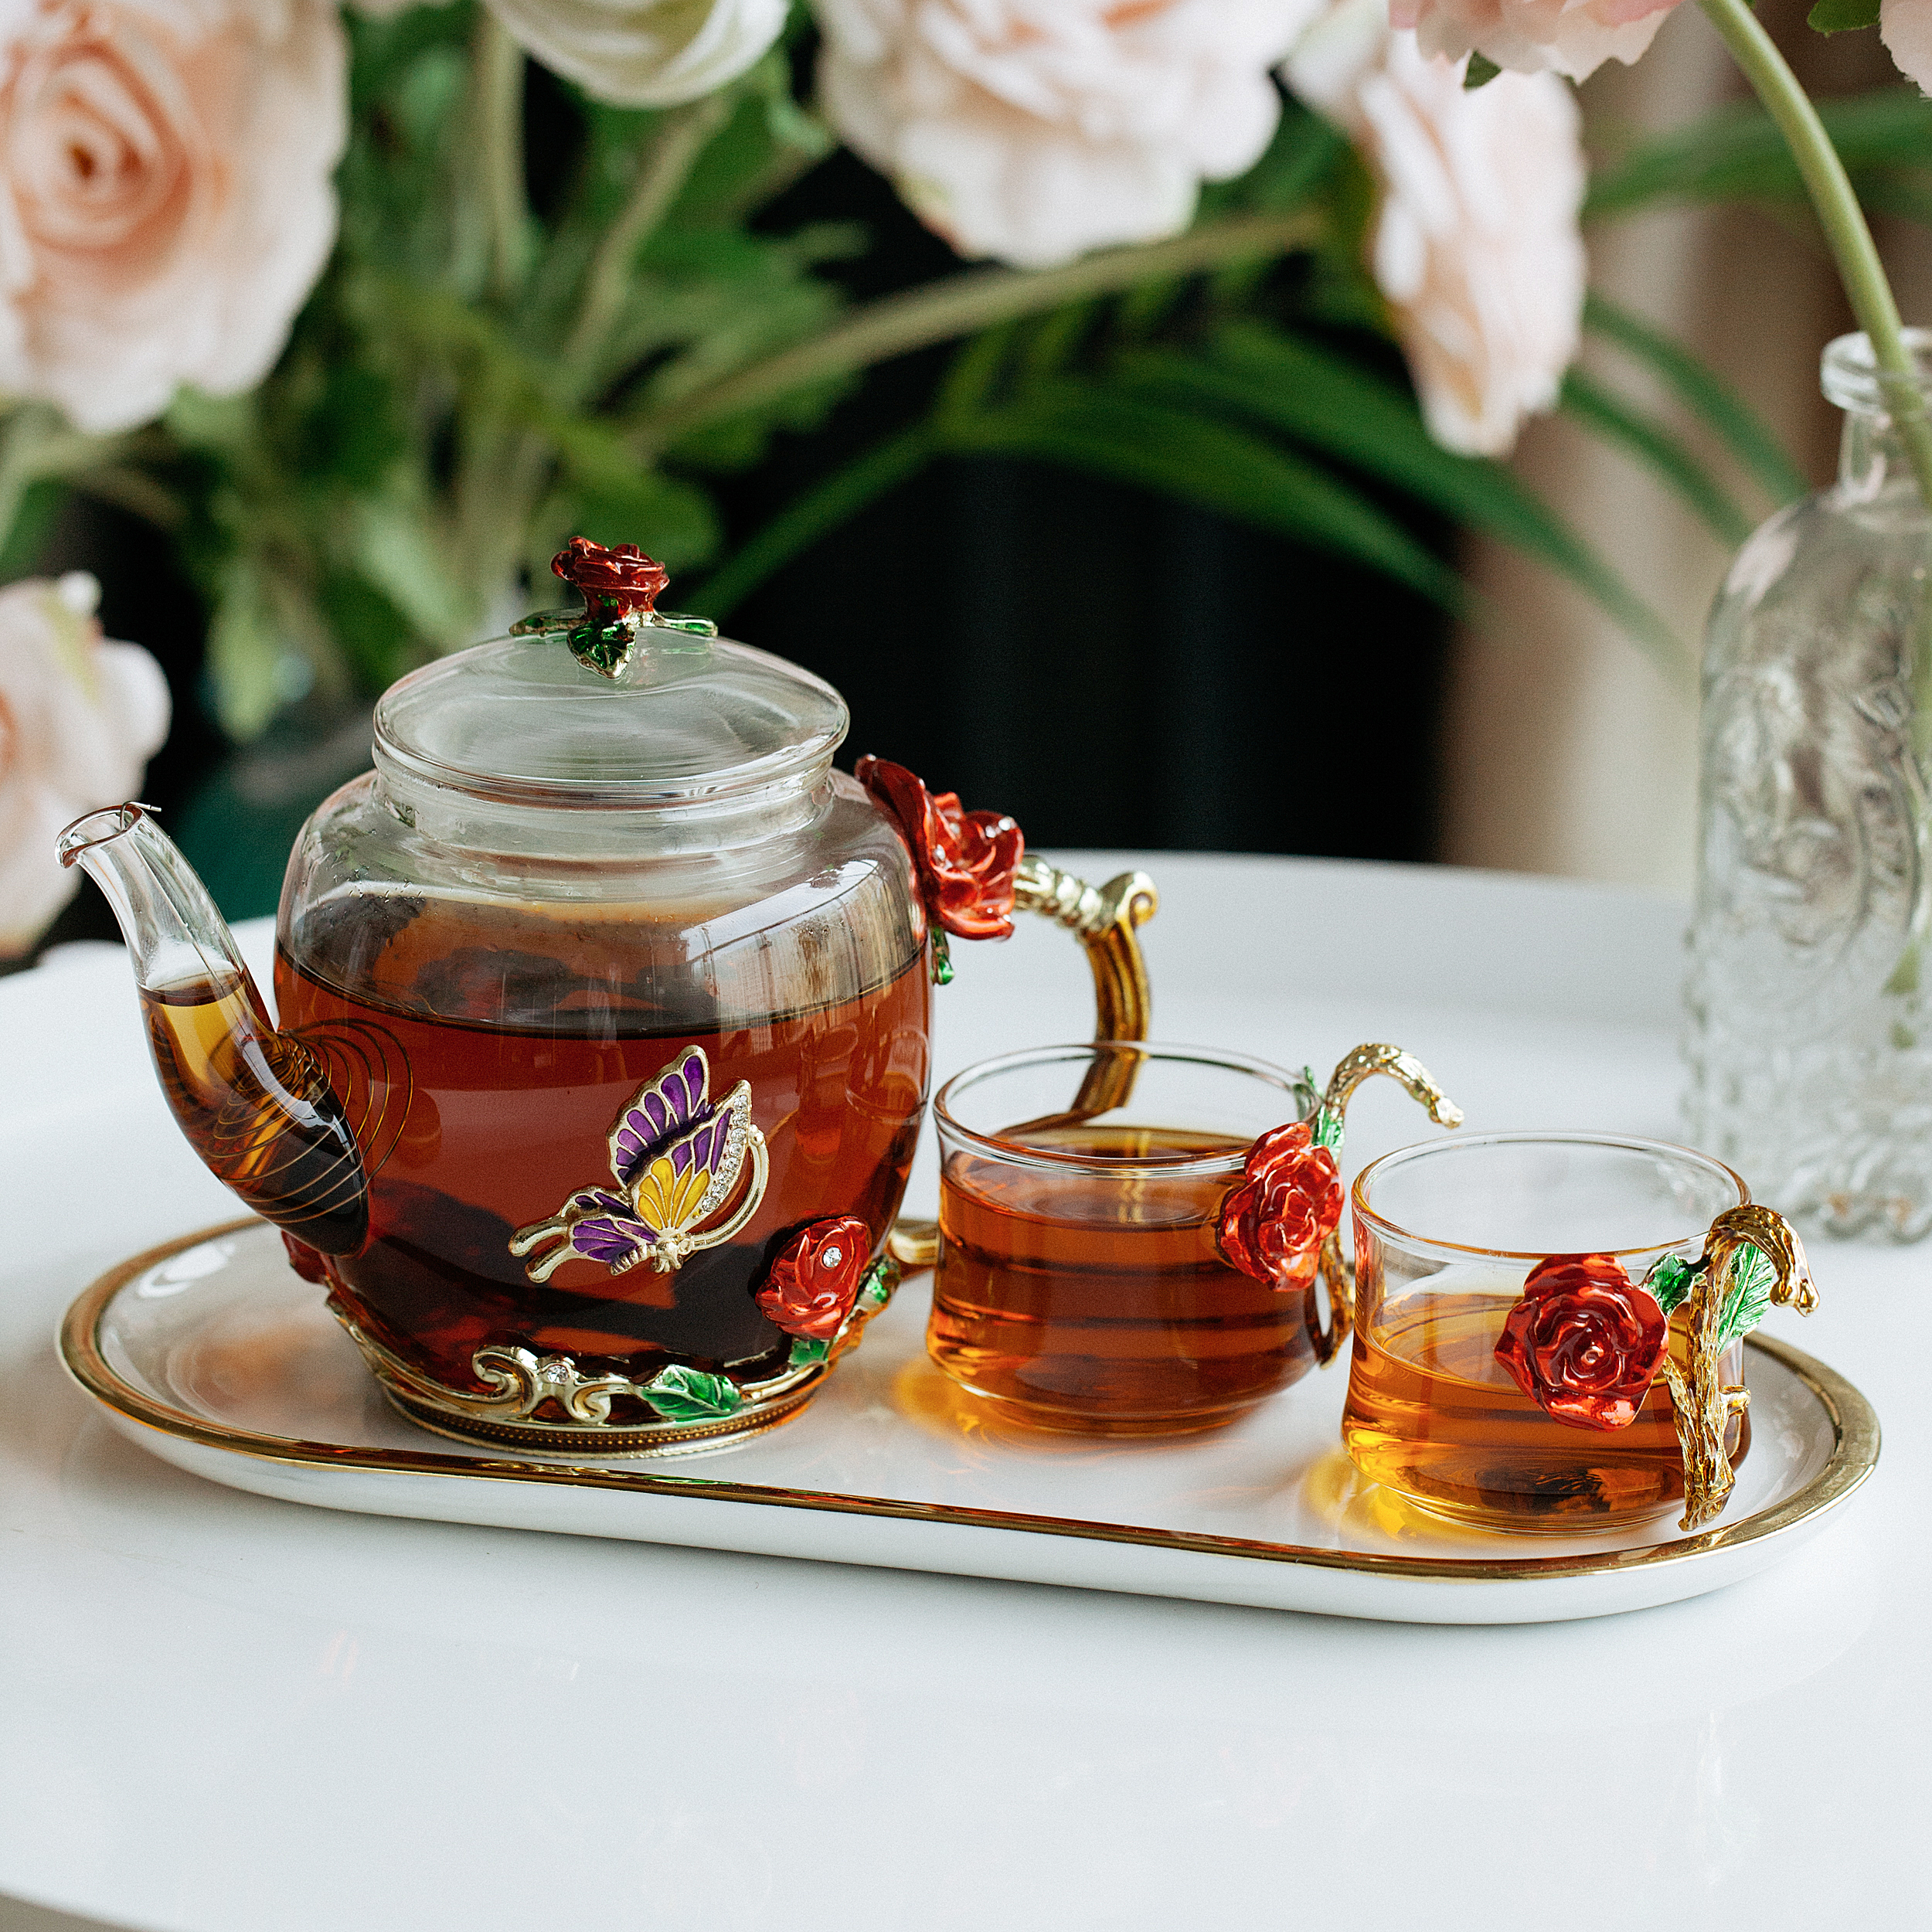 BTaT- Small Glass Tea Set, 2 Fancy Cups, Tea Pot Glass – BTAT